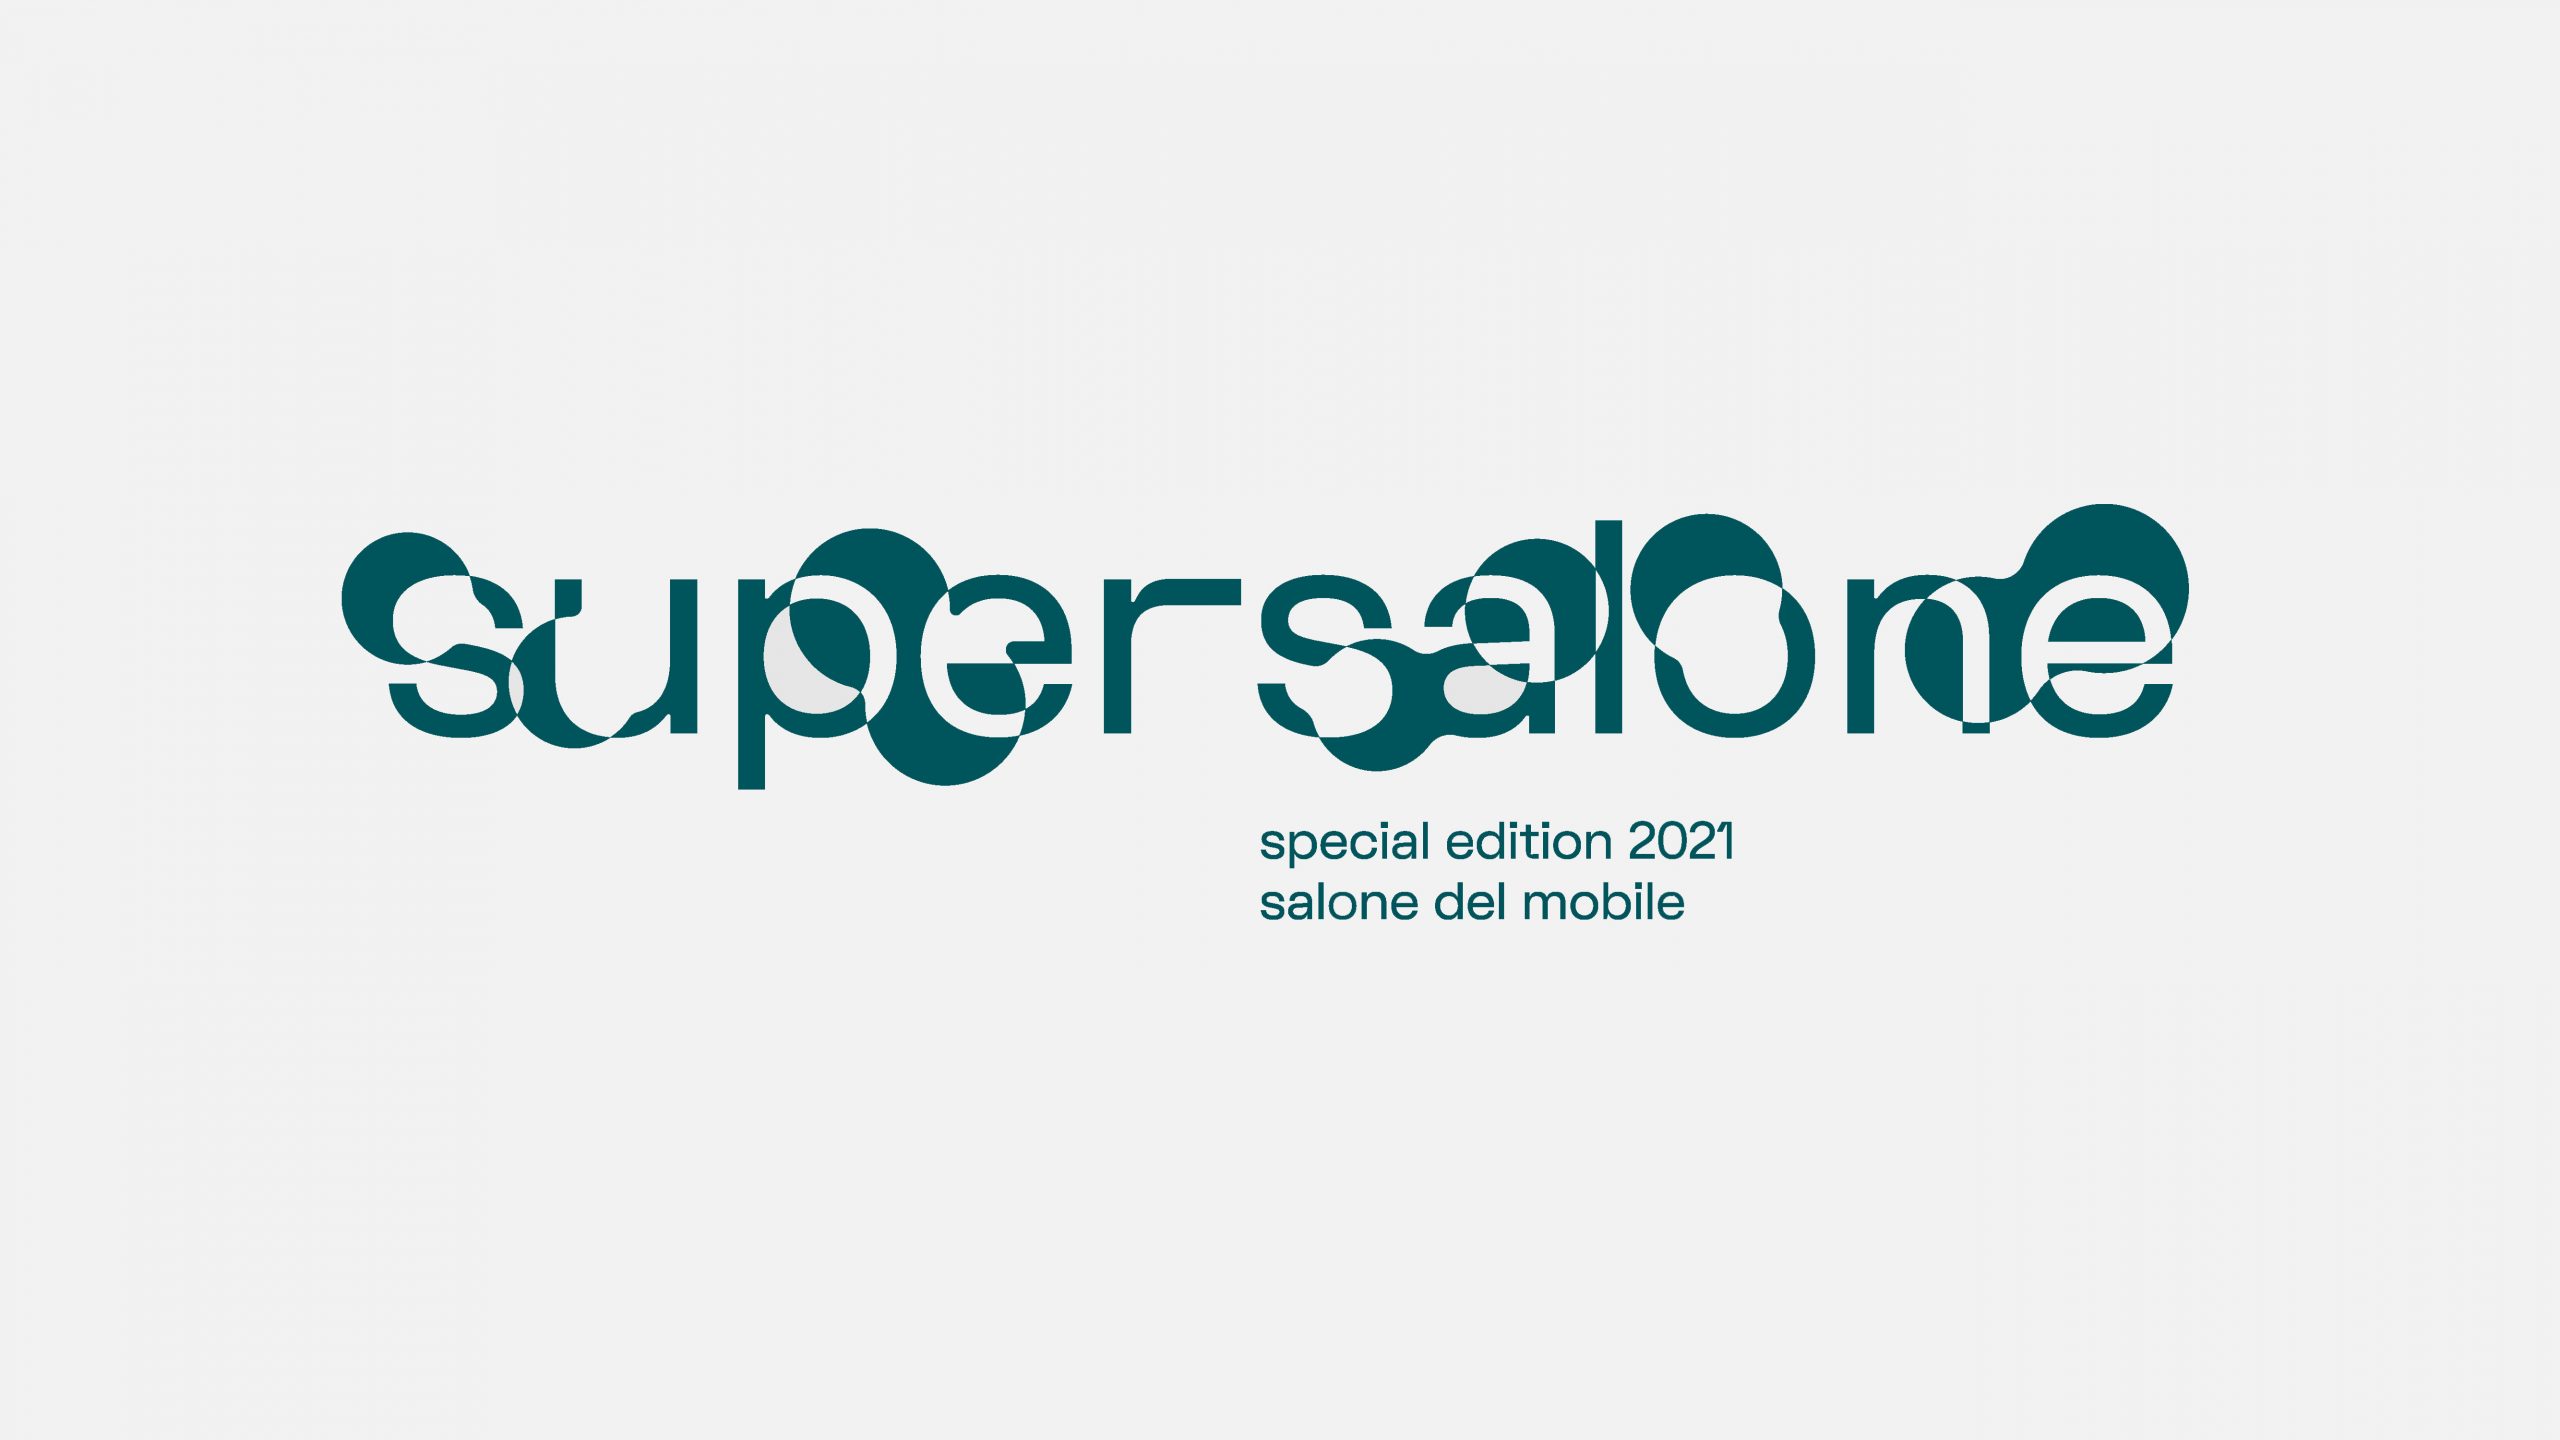 Supersalone logo for Salone del Mobile